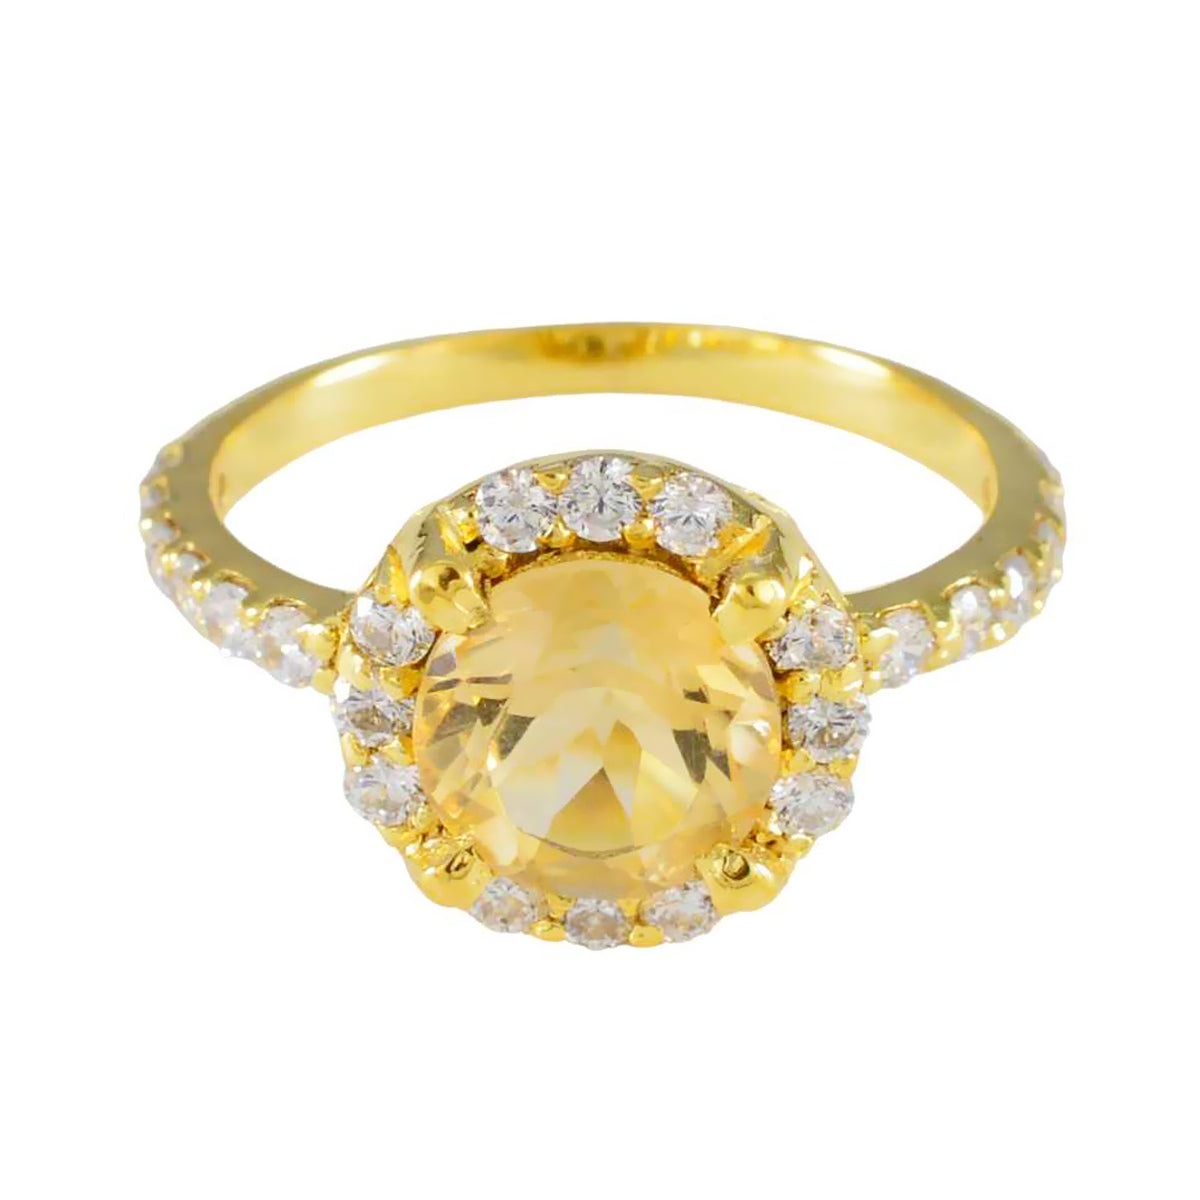 Riyo – bague en argent en vrac, plaqué or jaune, pierre citrine, forme ovale, réglage à griffes, bijoux élégants, bague de noël